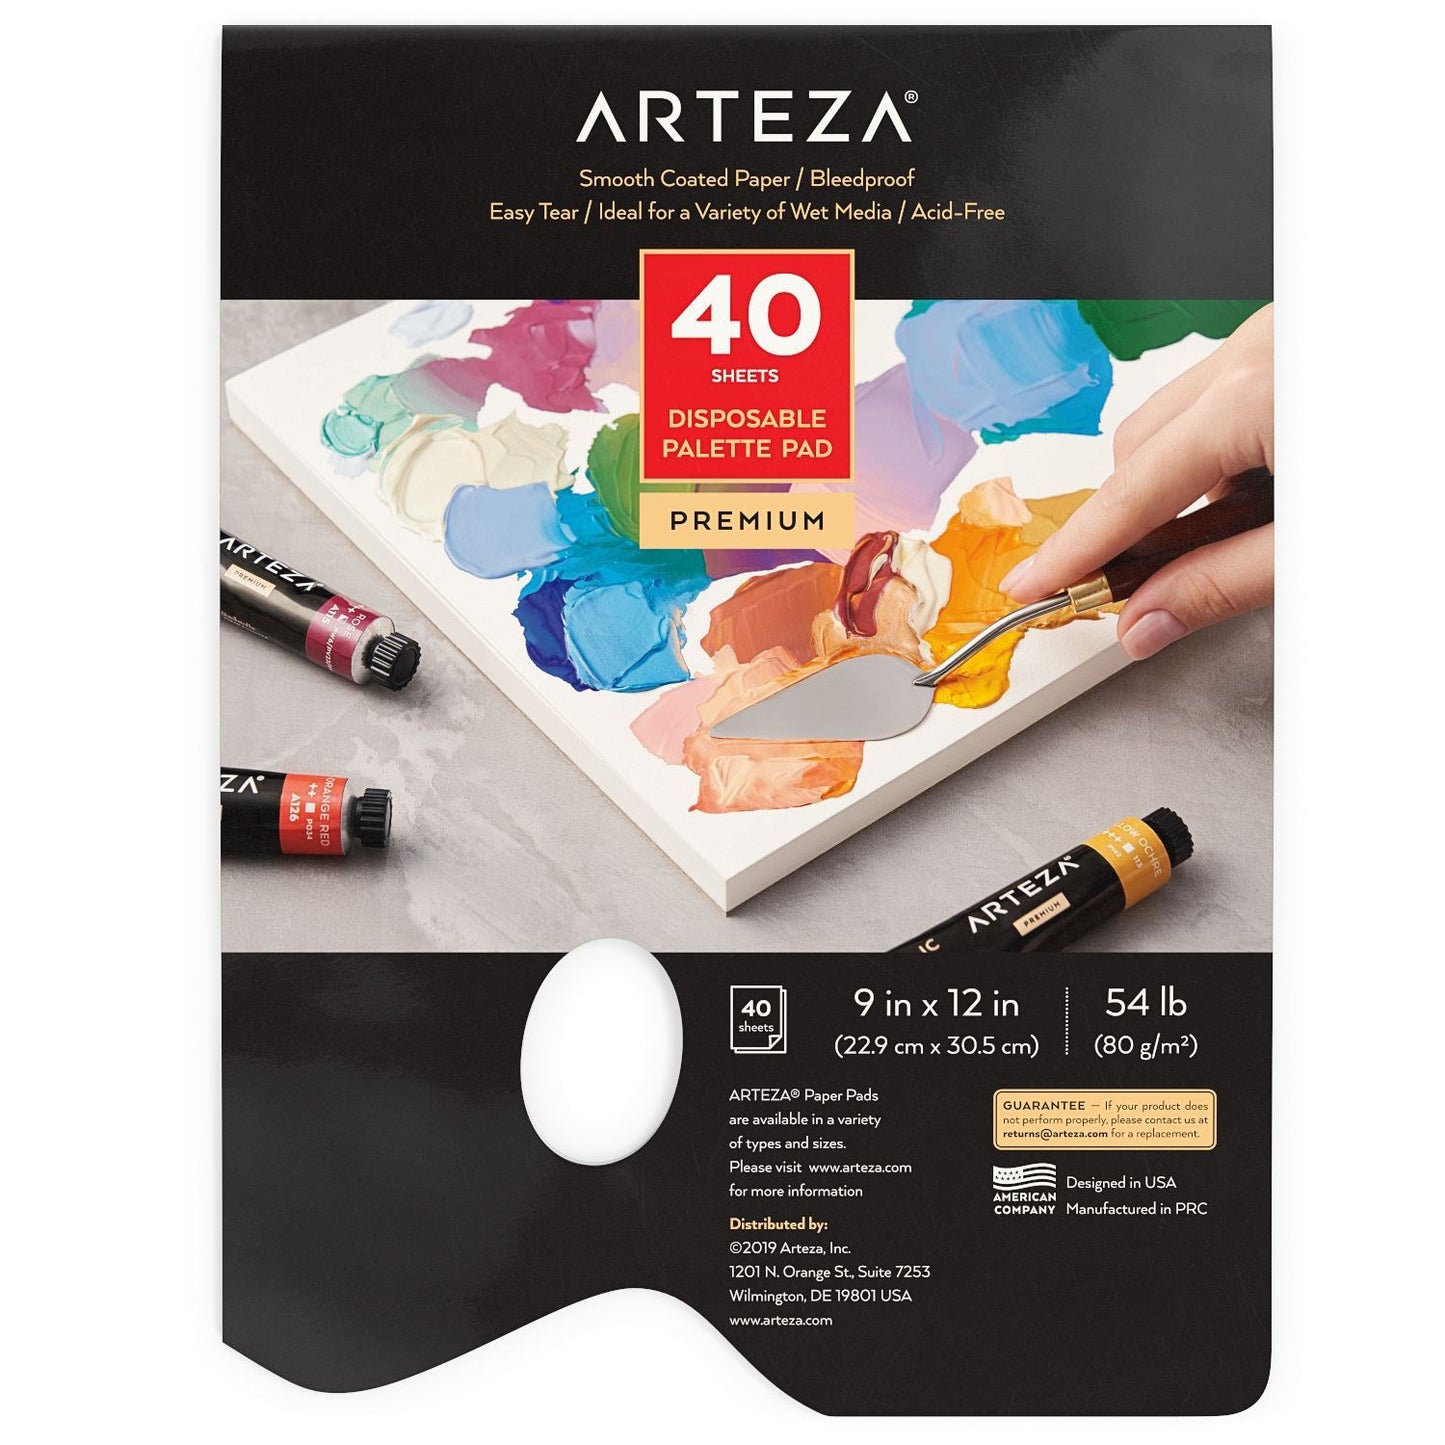 Arteza Disposable Palette Pad